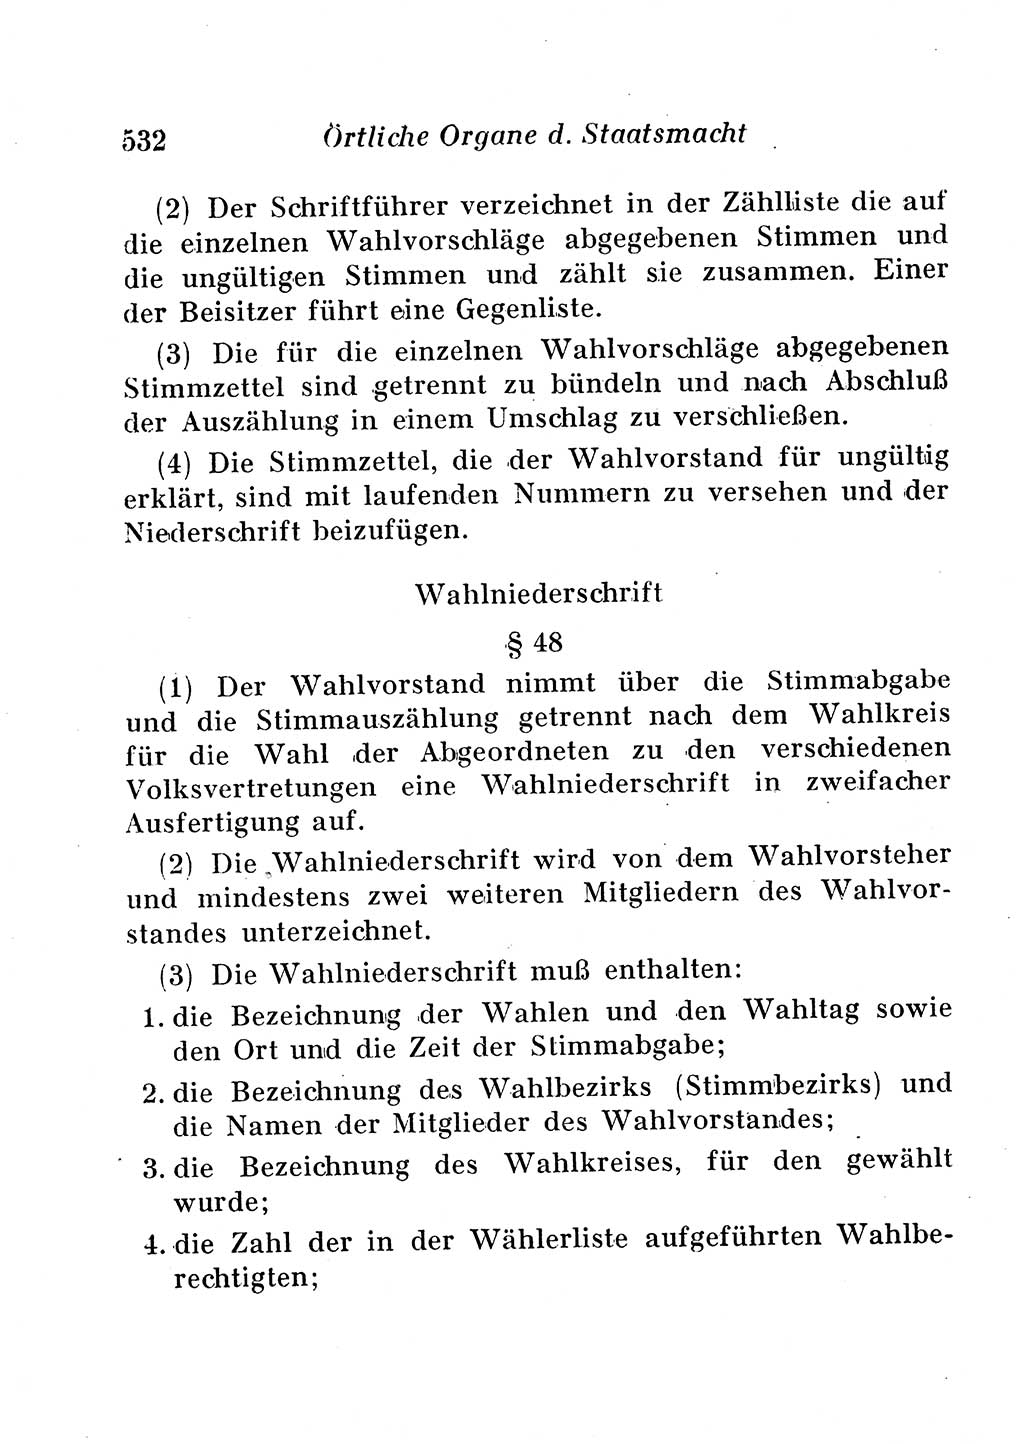 Staats- und verwaltungsrechtliche Gesetze der Deutschen Demokratischen Republik (DDR) 1958, Seite 532 (StVerwR Ges. DDR 1958, S. 532)